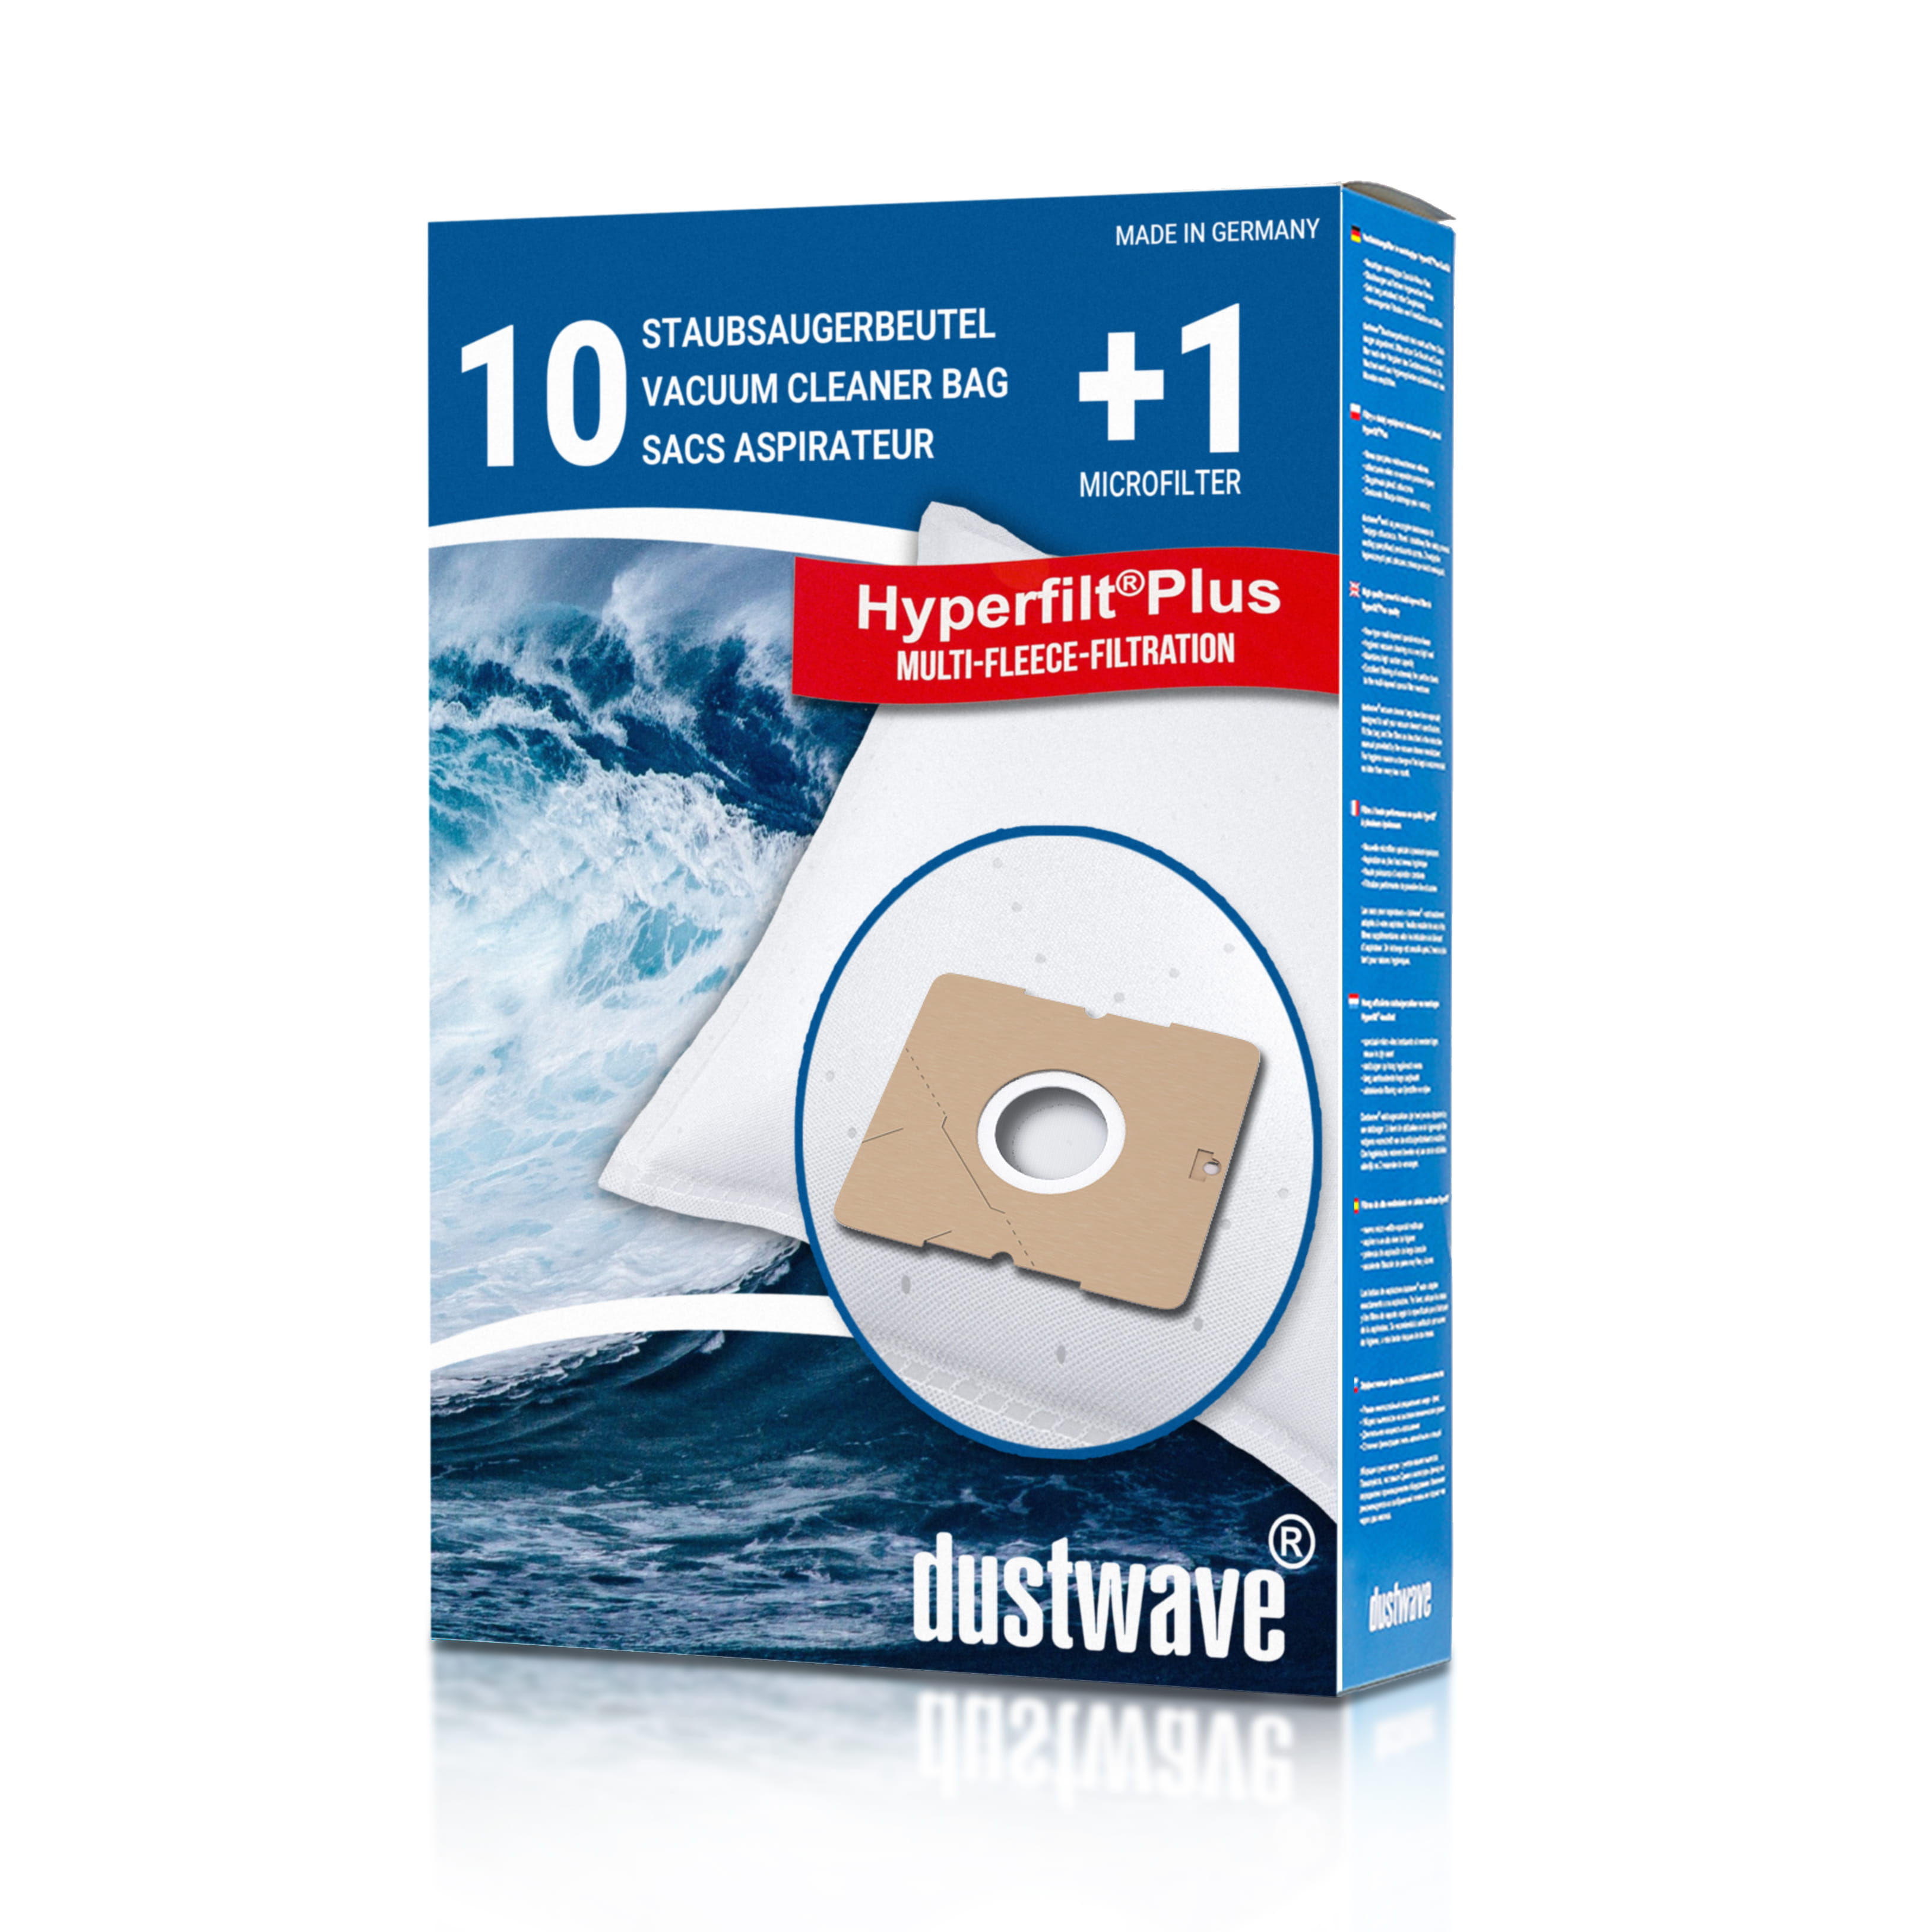 Dustwave® 10 Staubsaugerbeutel für AEG Smart 307 - hocheffizient mit Hygieneverschluss - Made in Germany